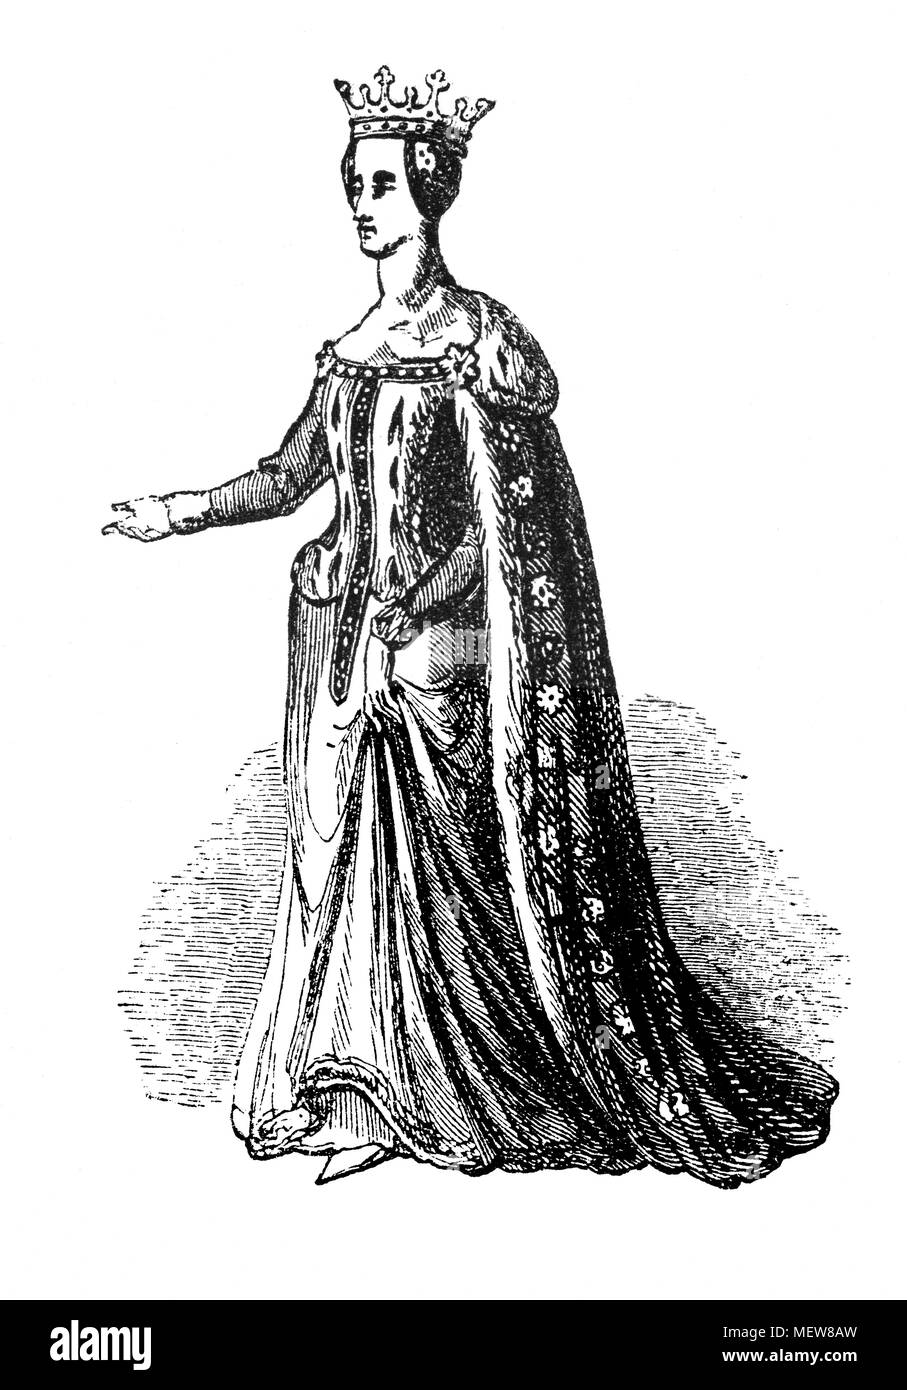 Catherine de Valois (1401 - 1437 était la reine consort d'Angleterre depuis 1420 jusqu'à 1422. Une fille de Charles VI de France, elle a épousé Henry V d'Angleterre et a donné naissance à son héritier Henri VI d'Angleterre. Sa liaison (et possible mariage secret) avec Owen Tudor a été le tremplin de que les fortunes de la famille, menant éventuellement à leur petit-fils élévation que Henri VII d'Angleterre. Catherine's grande sœur Isabella a été reine d'Angleterre à partir de 1396 jusqu'à 1399, comme l'enfant épouse de Richard II. Banque D'Images